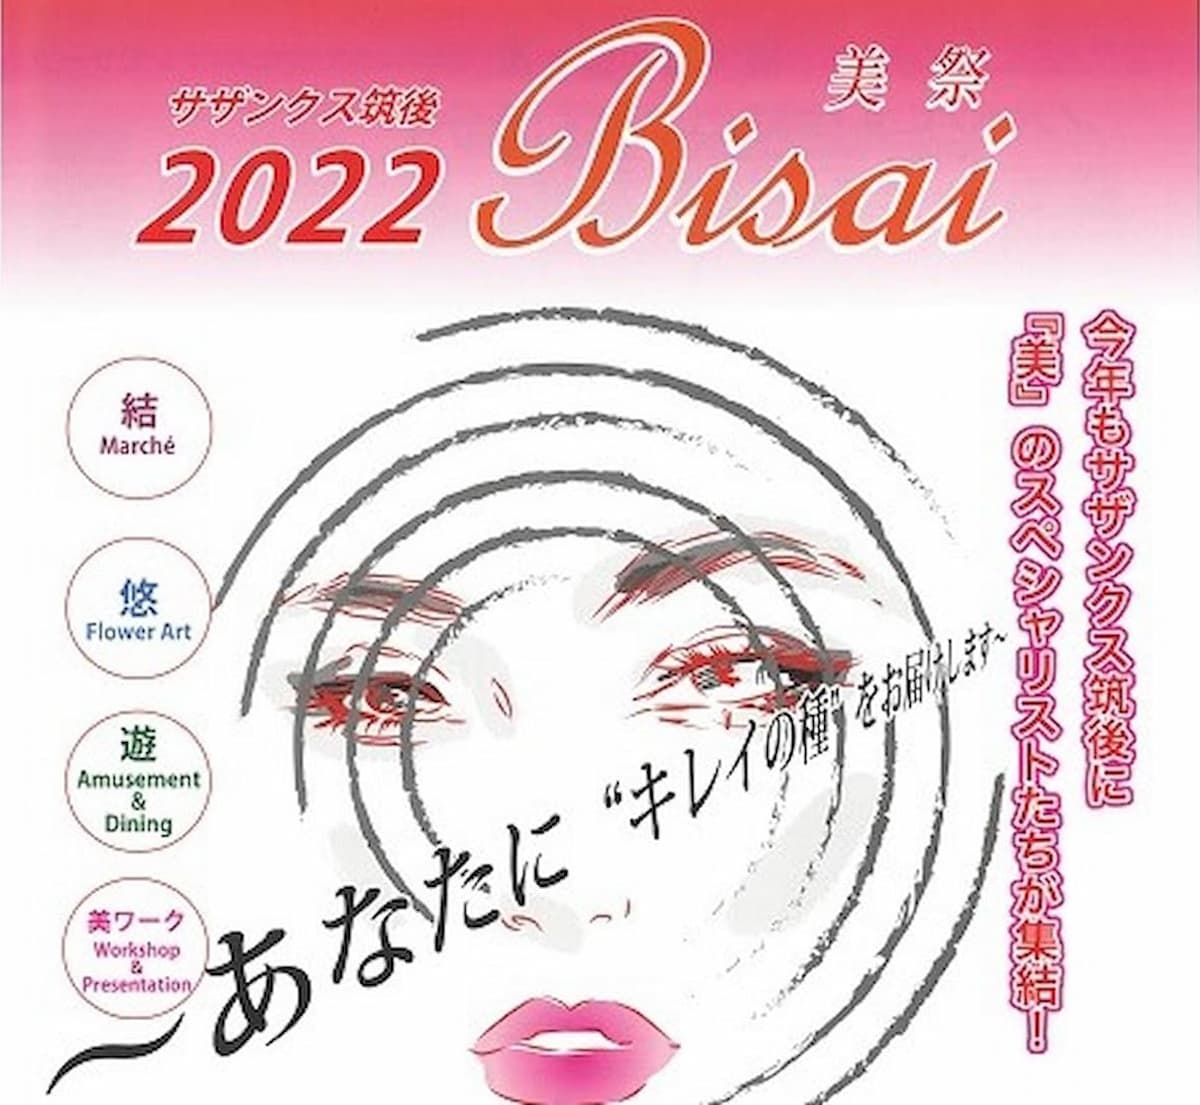 Bisai（美祭）って“美”をテーマにしたイベントが開催されるみたい。9月3日、4日（筑後市）